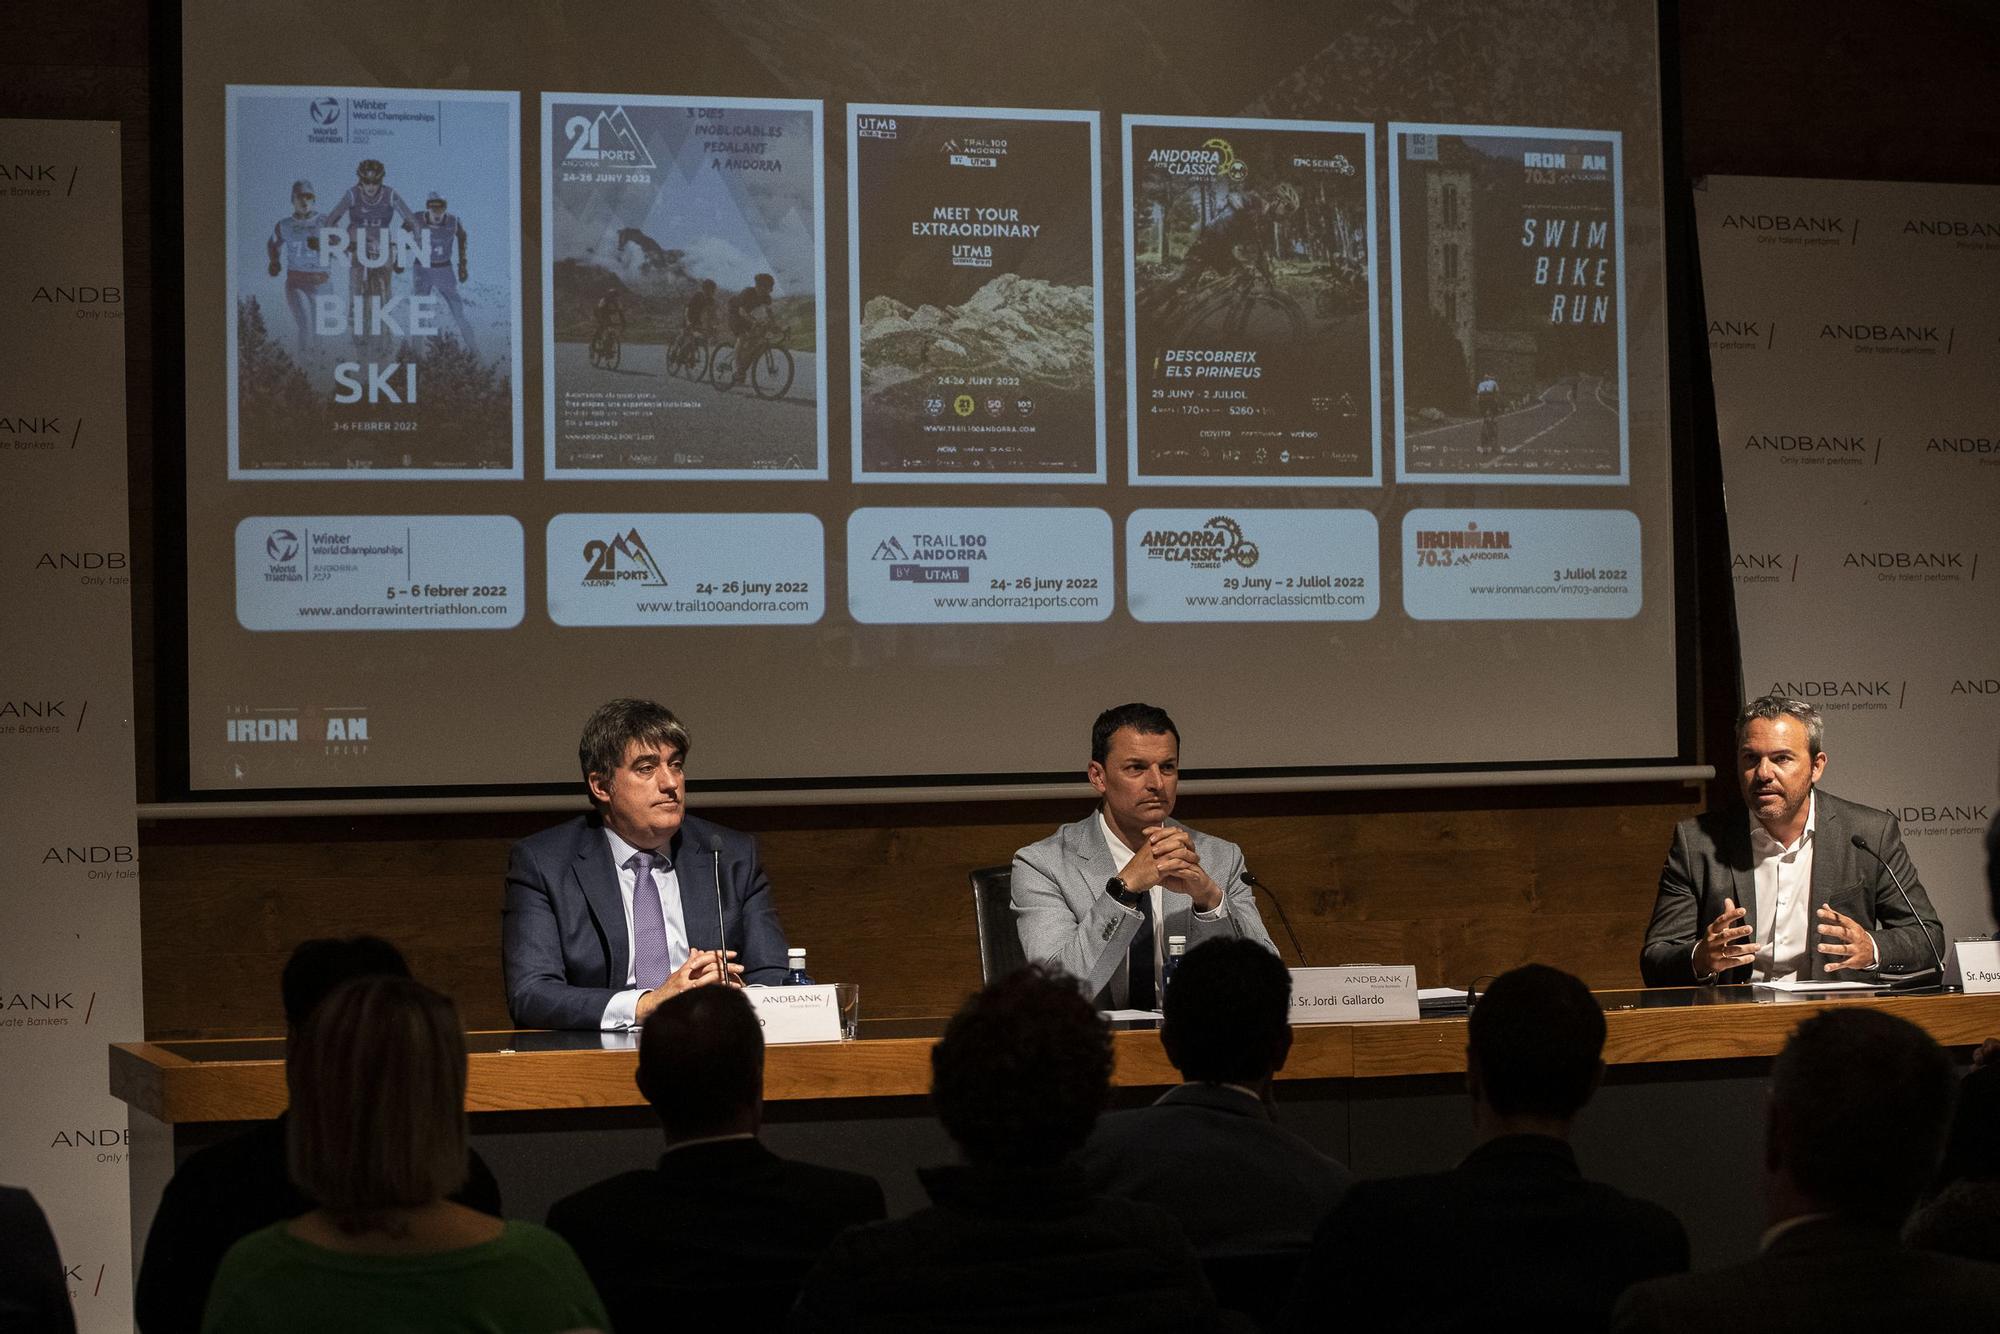 El Andorra Multisport Festival se consolida en el Principado